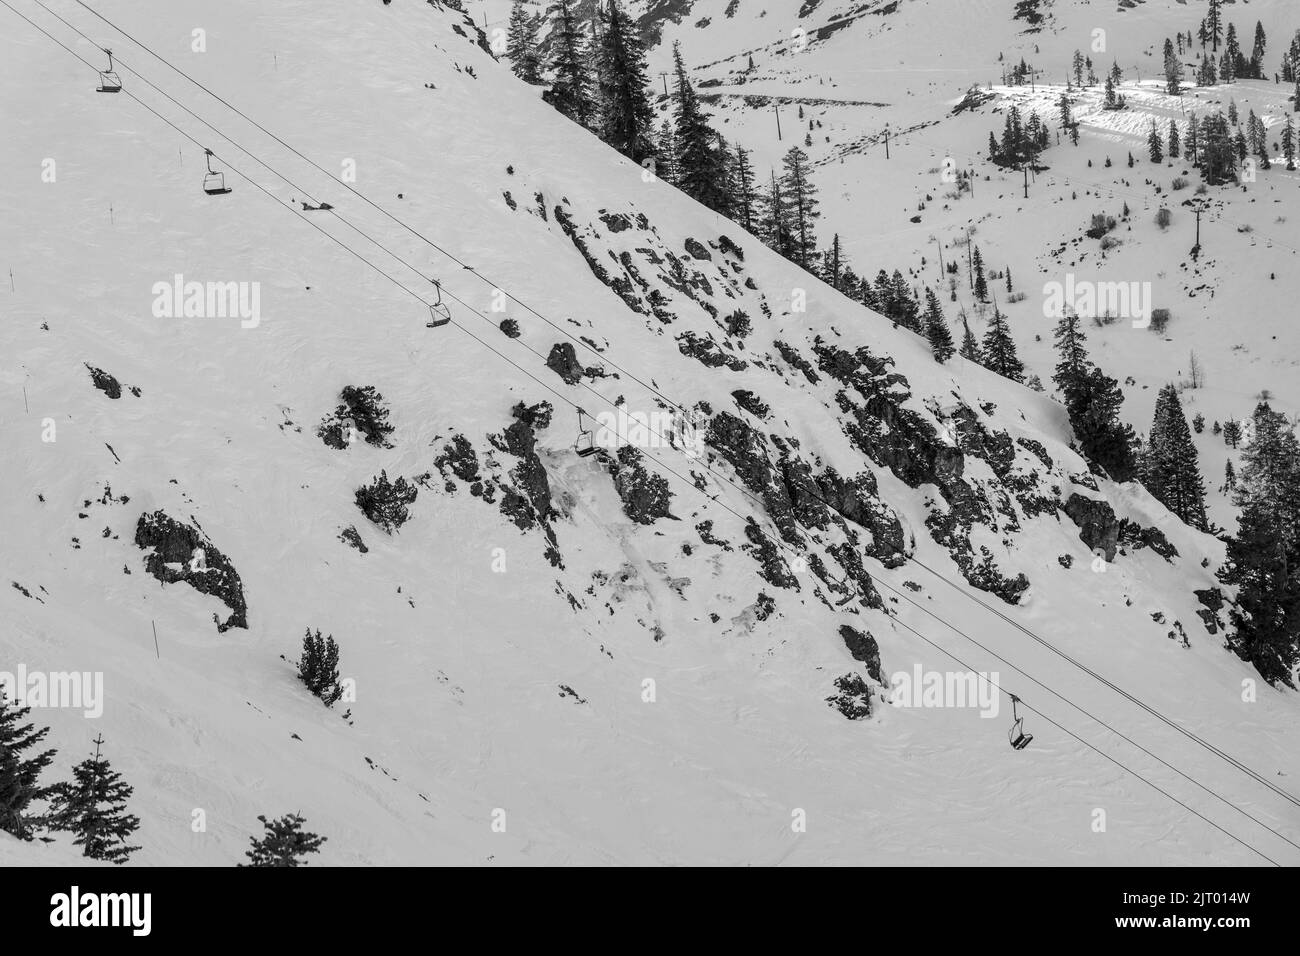 Un télésiège se déplaçant au-dessus de la falaise couverte de neige dans une station de ski près du lac Tahoe en Californie Banque D'Images